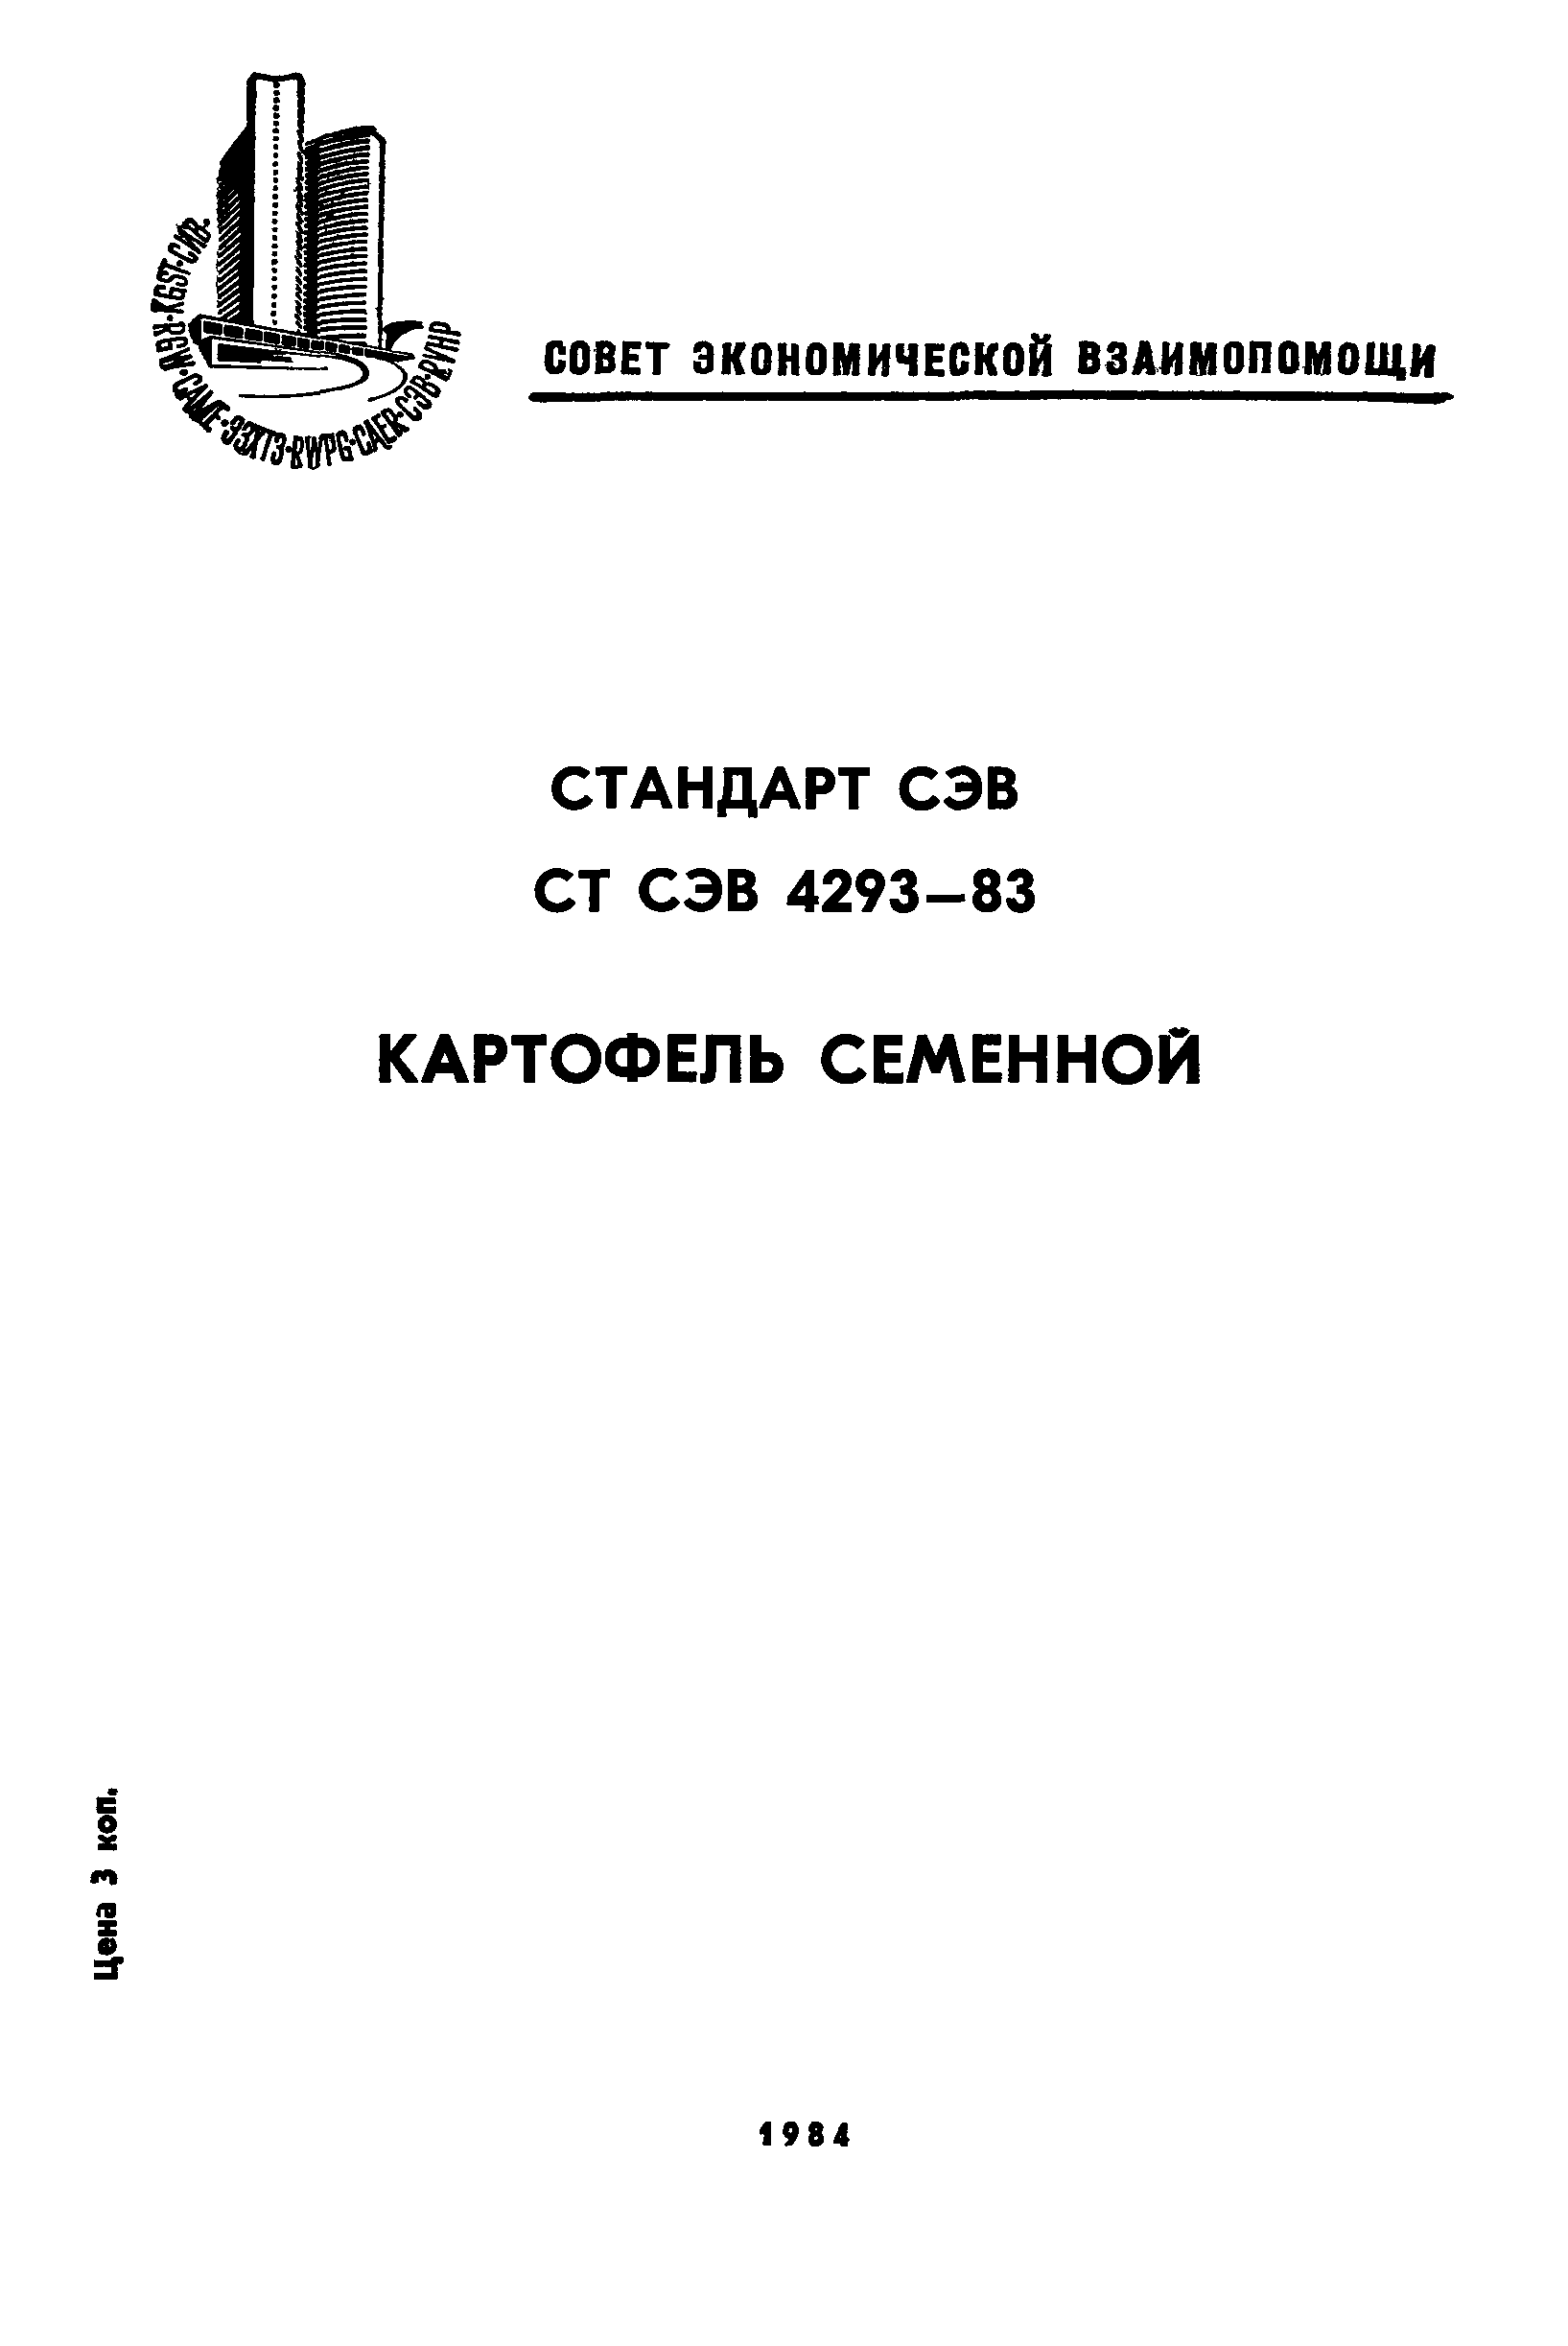 СТ СЭВ 4293-83